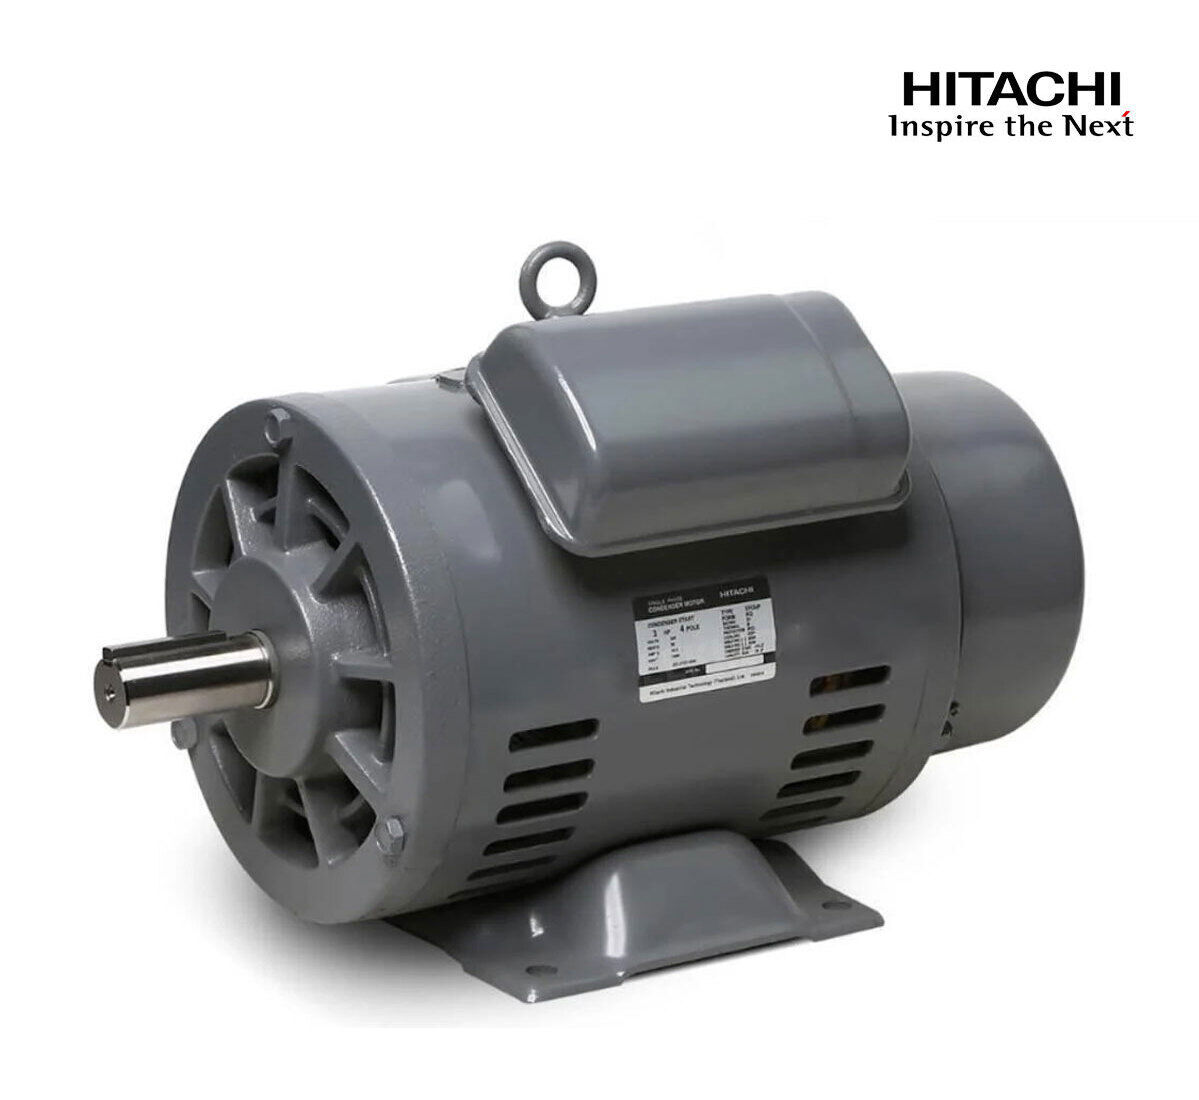 มอเตอร์ฮิตาชิของแท้ 100% HITACHI รุ่น EFOUP-KQ กำลัง 3 แรงม้า (2.2 KW.) กำลังไฟฟ้าที่ใช้ 220V ความเร็วรอบตัวเปล่า 1450 RPM แกนเพลามอเตอร์ 28 MM.รับประกัน 3 ปี มีของพร้อมจัดส่งทุกวัน